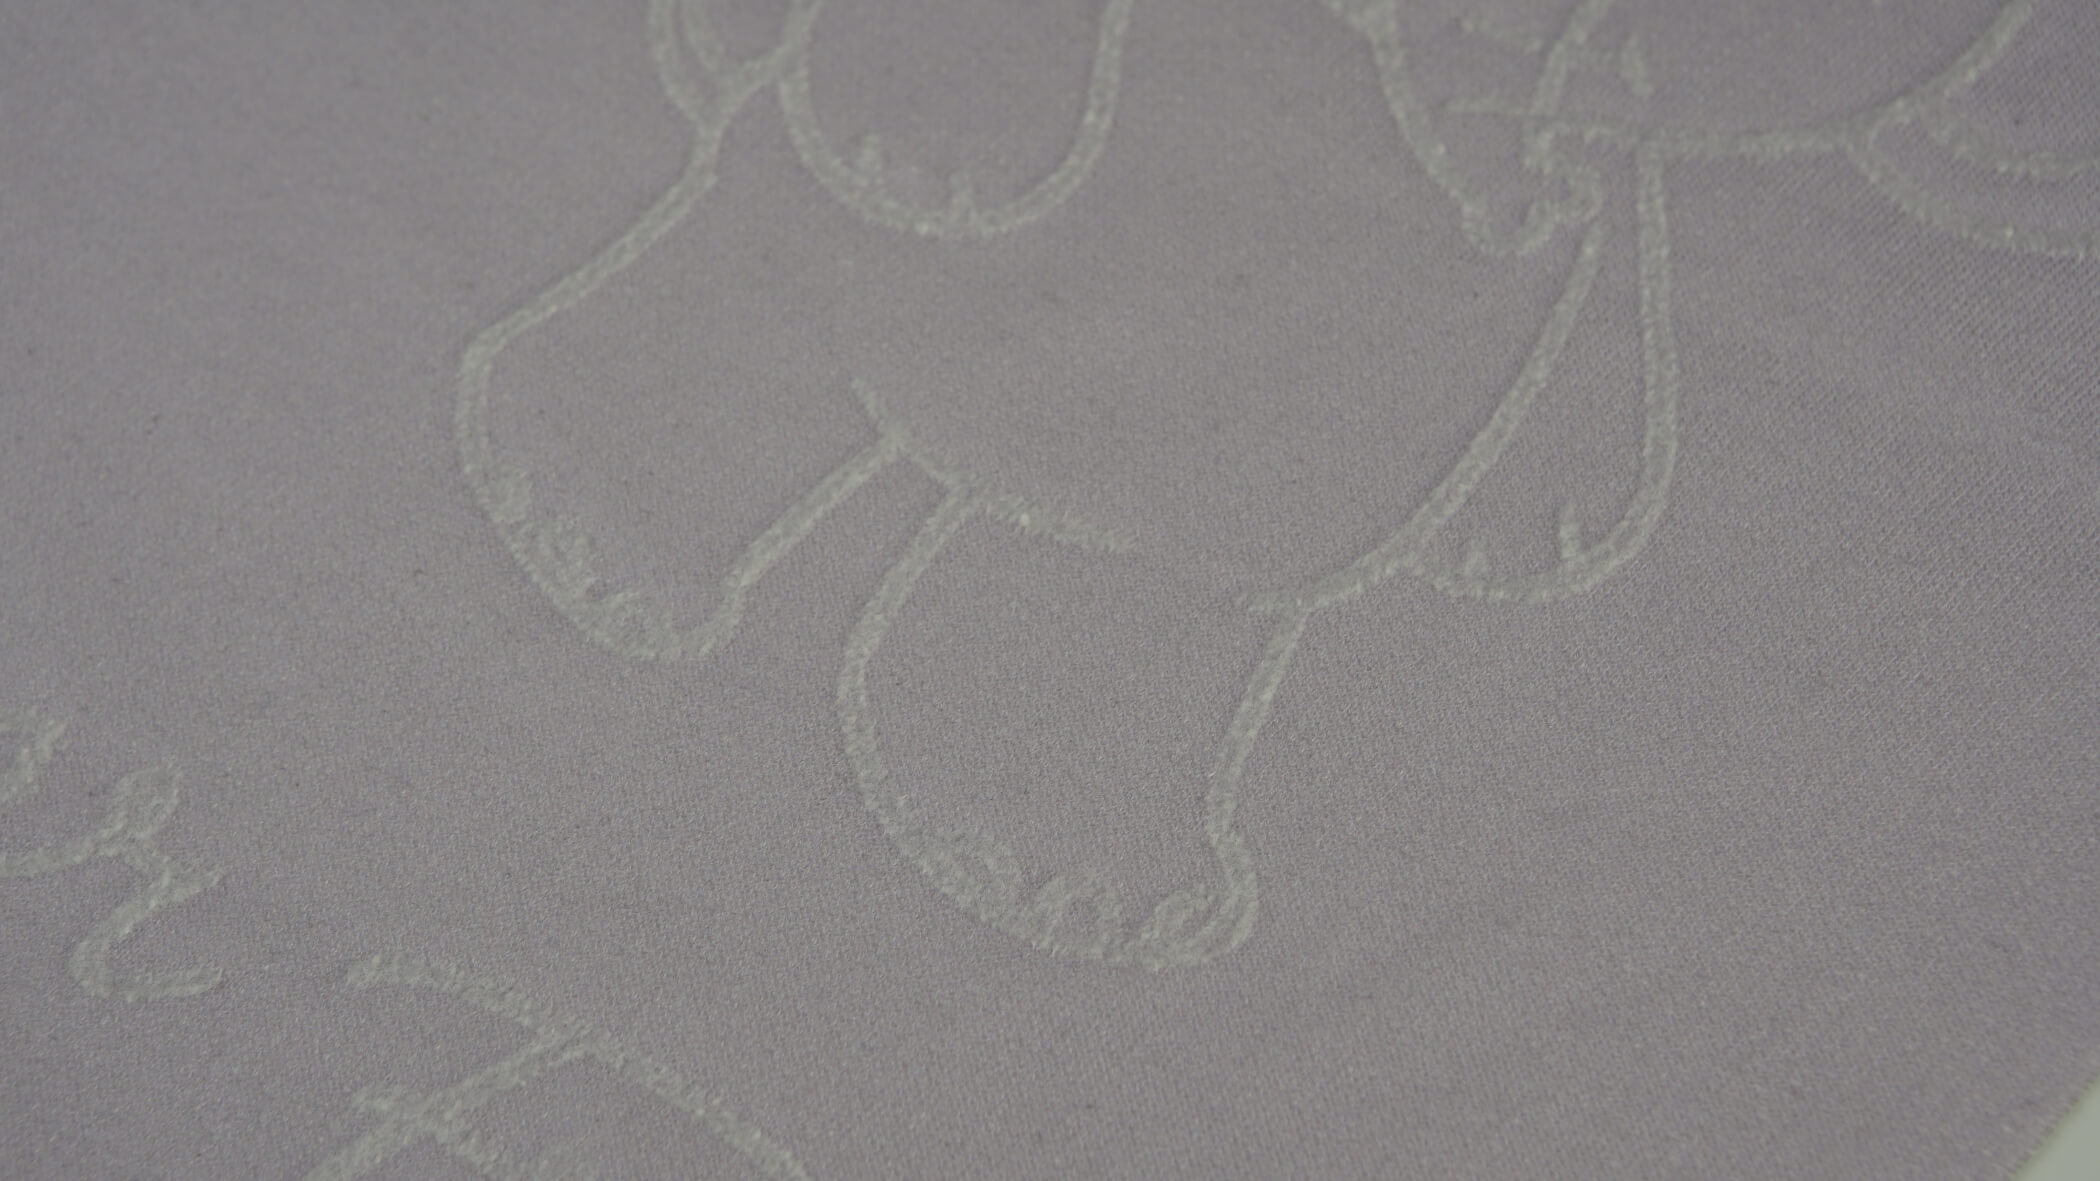 Patas e tromba de elefante utilizando a técnica de bordado Tanaka/Tanaka 3D